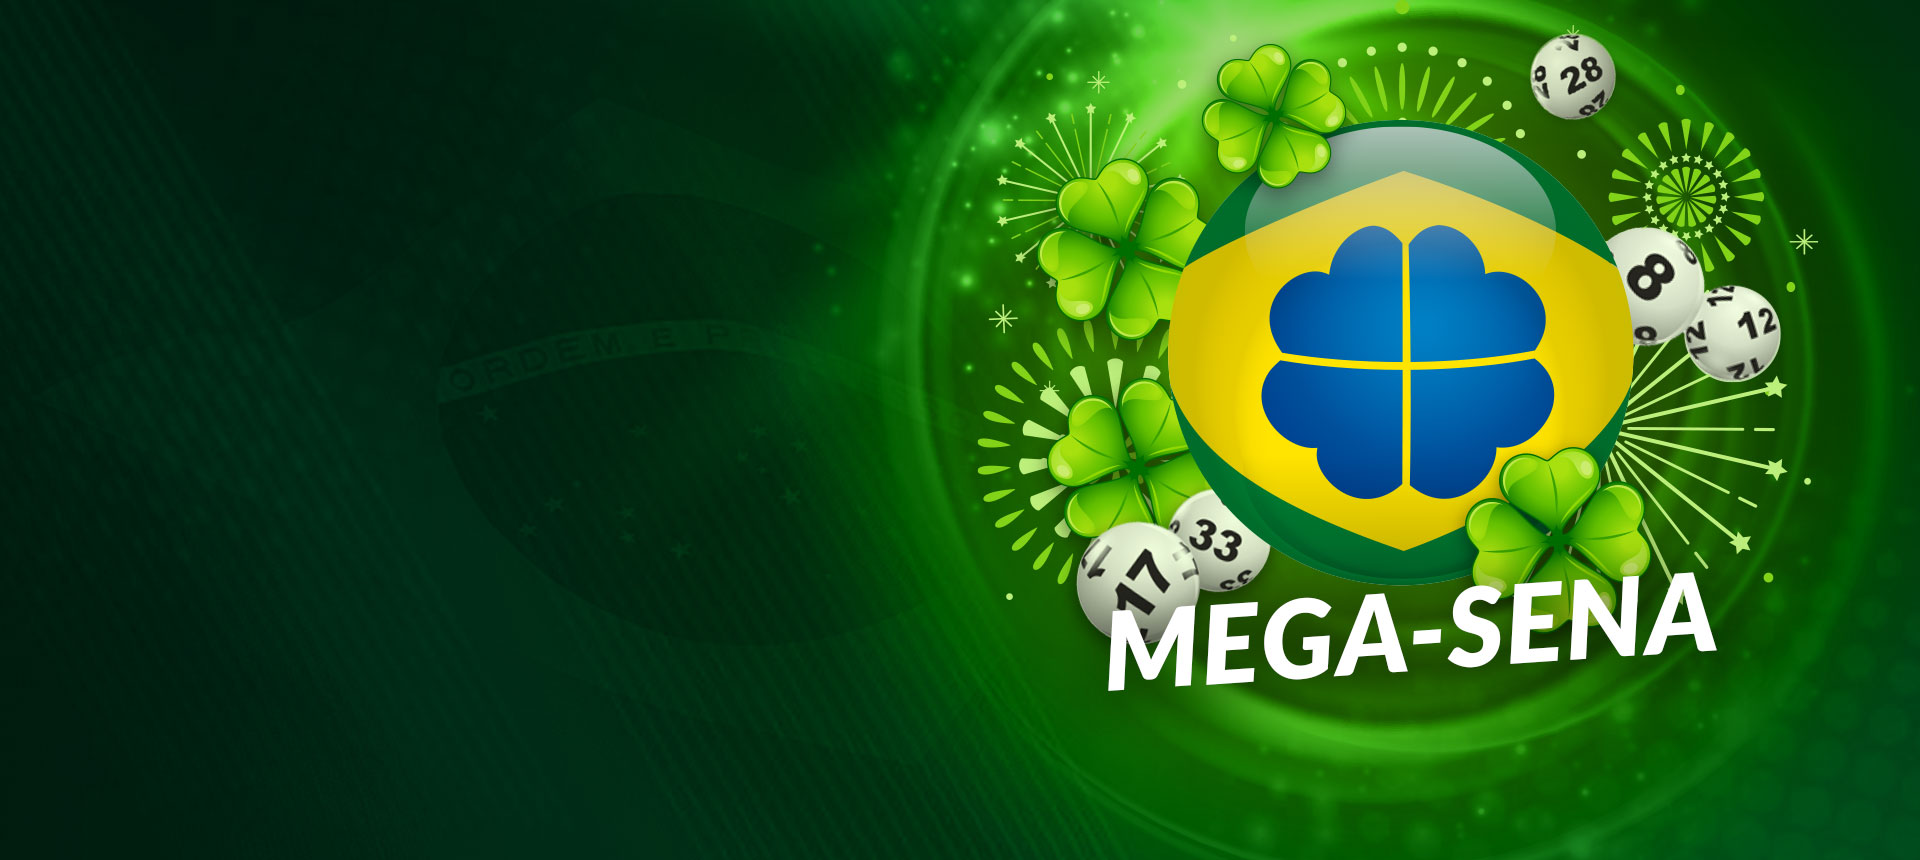 Jogue na Mega-Sena agora por R$3 Milhões!